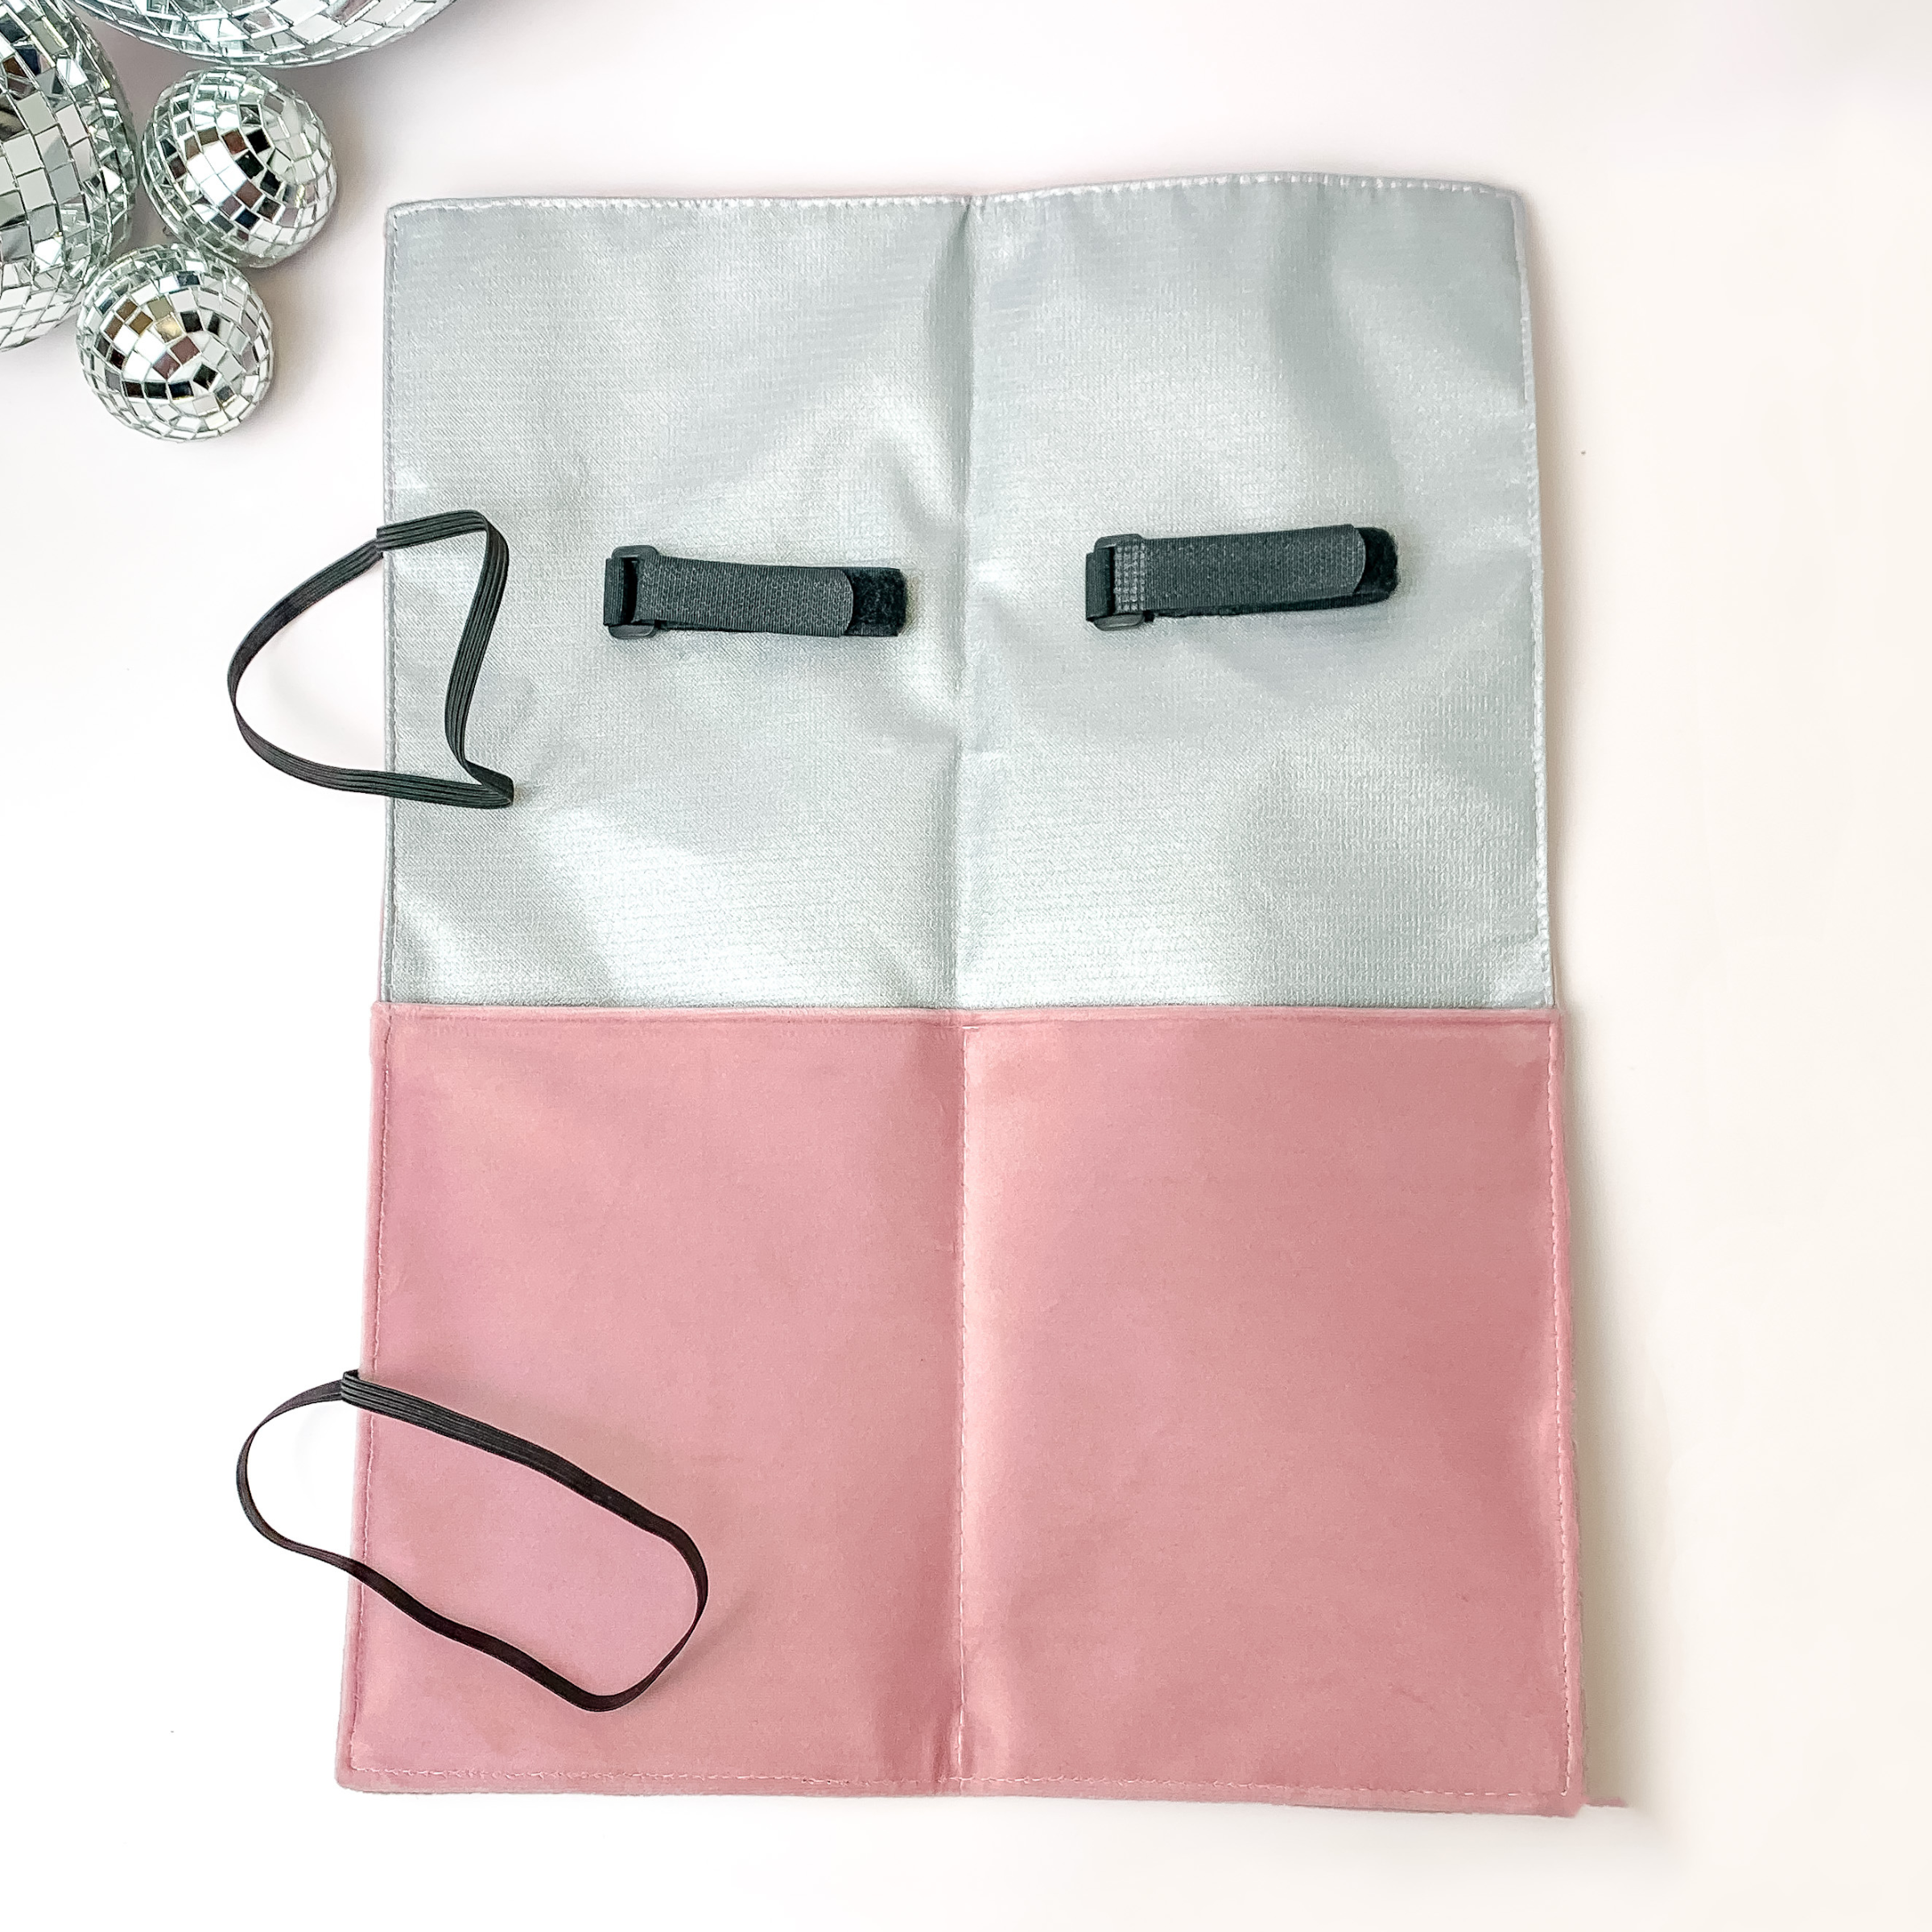 Makeup Junkie | Velvet Hot Tools Bag in Light Pink - Giddy Up Glamour Boutique